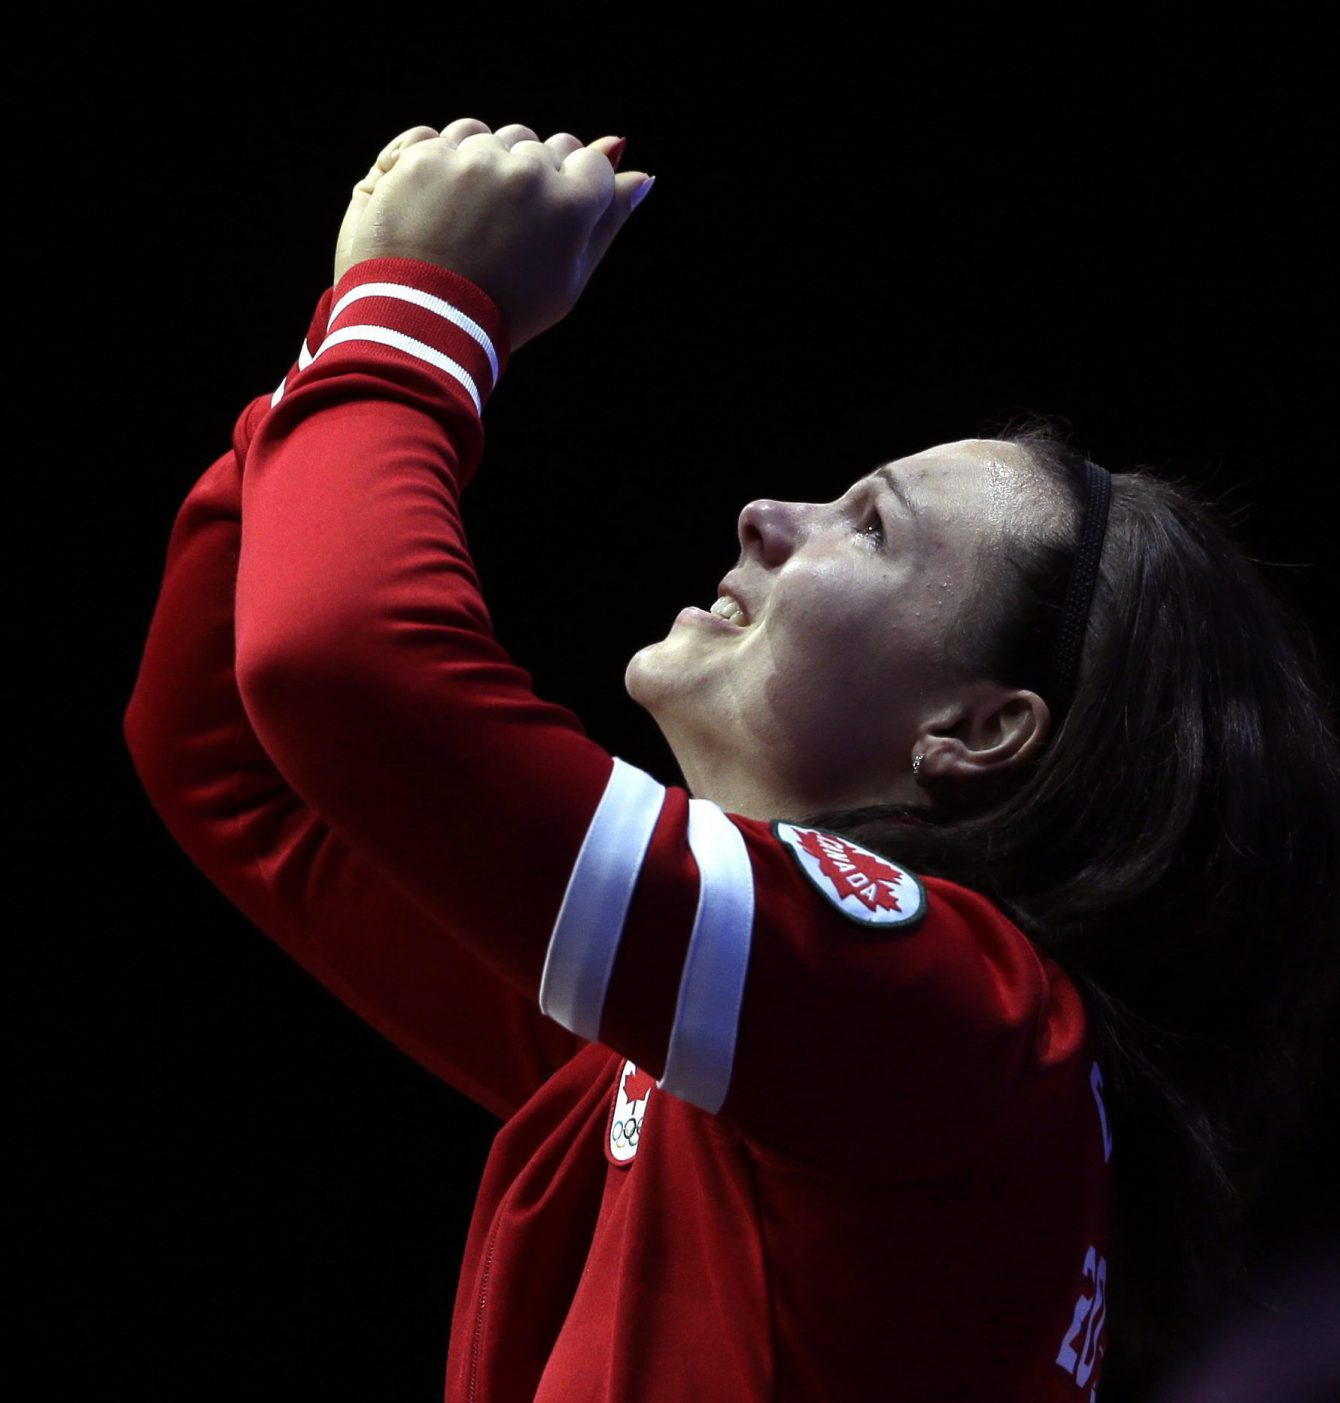 Christine Girard d'Équipe Canada après avoir remporté la médaille de bronze de l'épreuve d'haltérophilie des 63 kg à Londres 2012, le 31 juillet 2012. (AP Photo/Mike Groll)